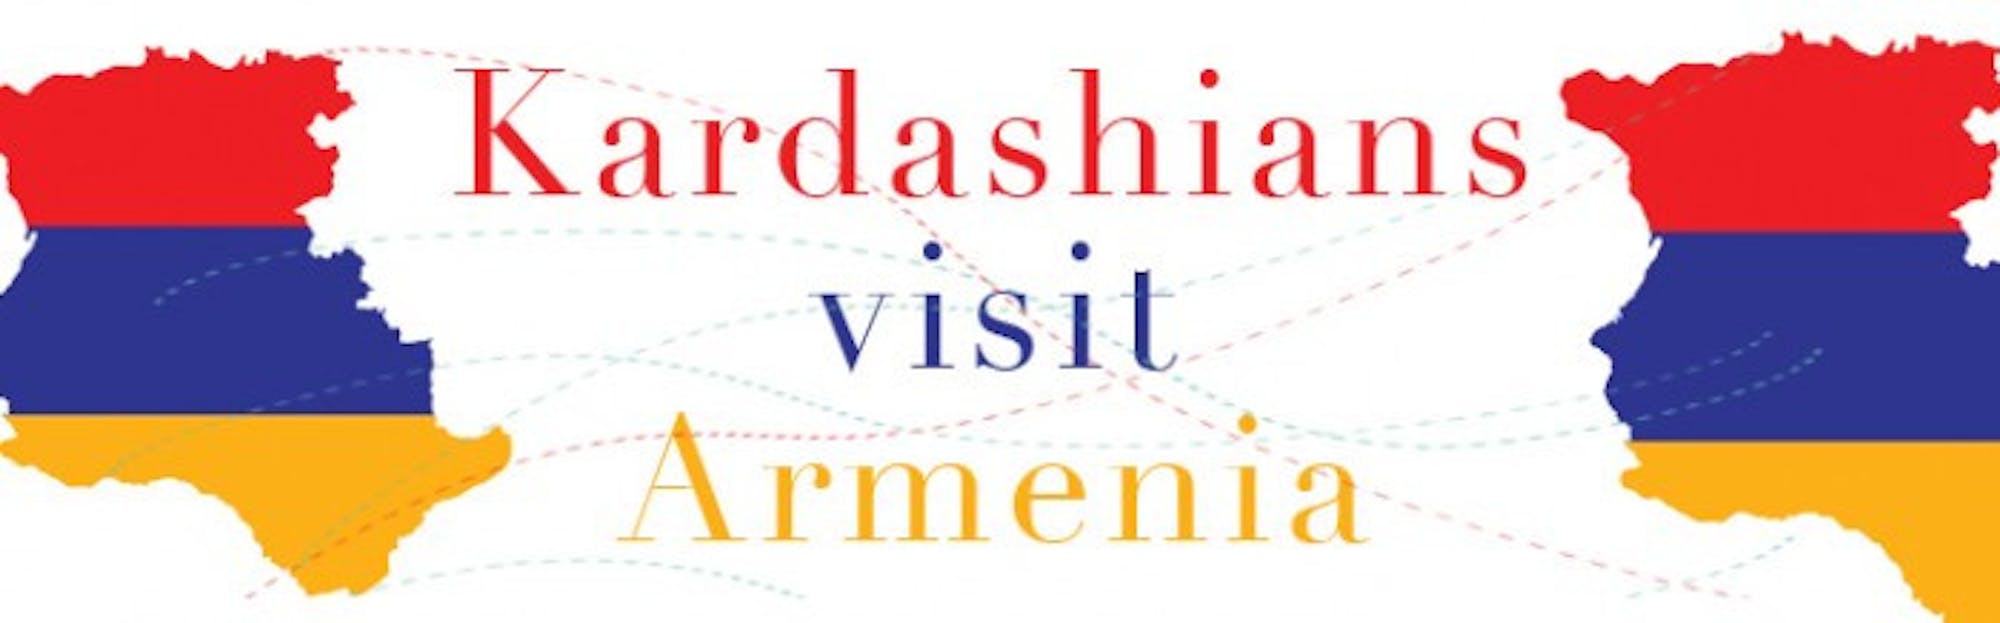 Kardashians visit Armenia